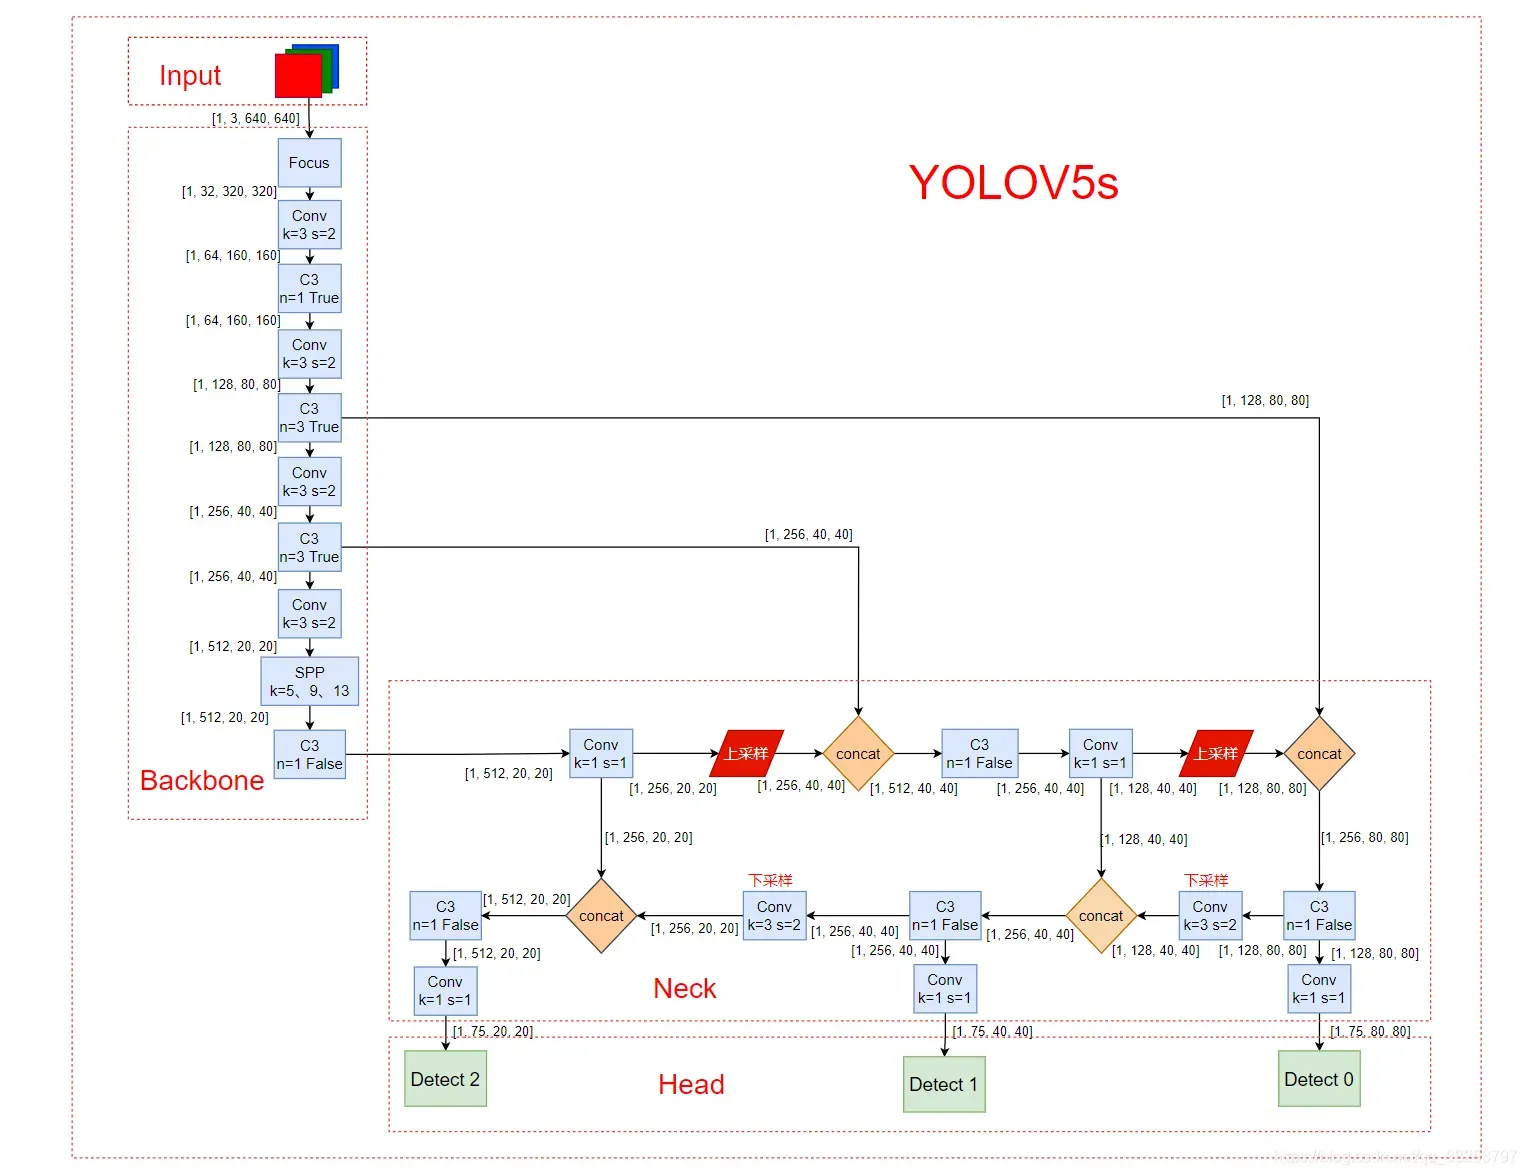 【YOLOV5-5.x 源码解读】common.py